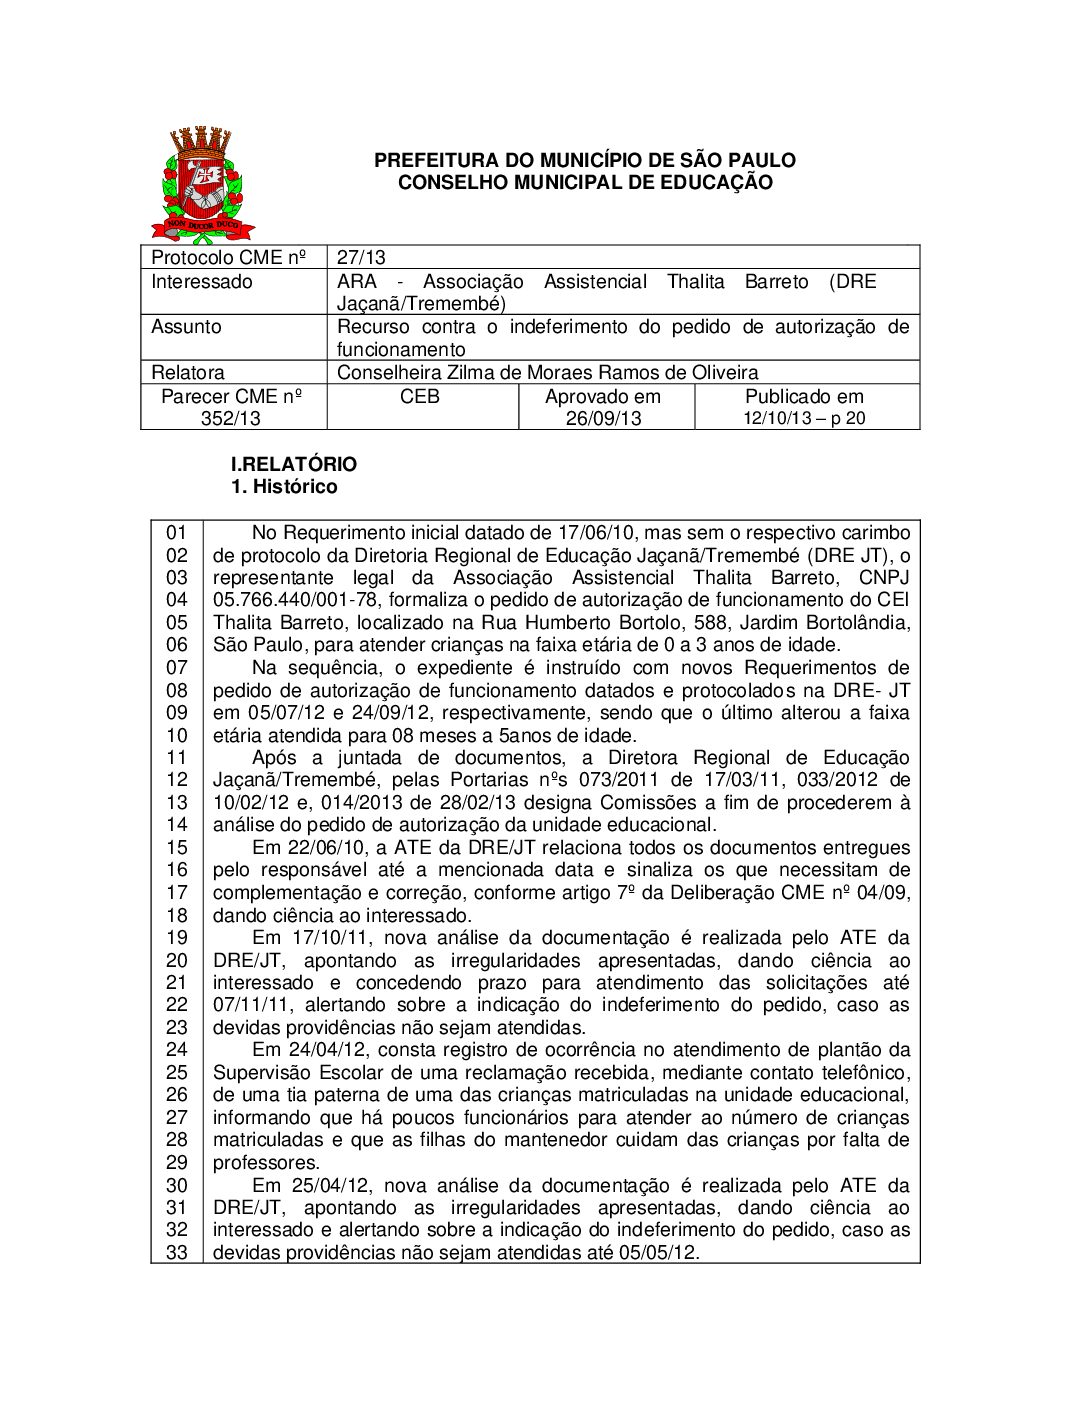 Parecer CME nº 352/2013 - ARA - Associação Assistencial Thalita Barreto (DRE Jaçanã/Tremembé) - Recurso contra o indeferimento do pedido de autorização de funcionamento